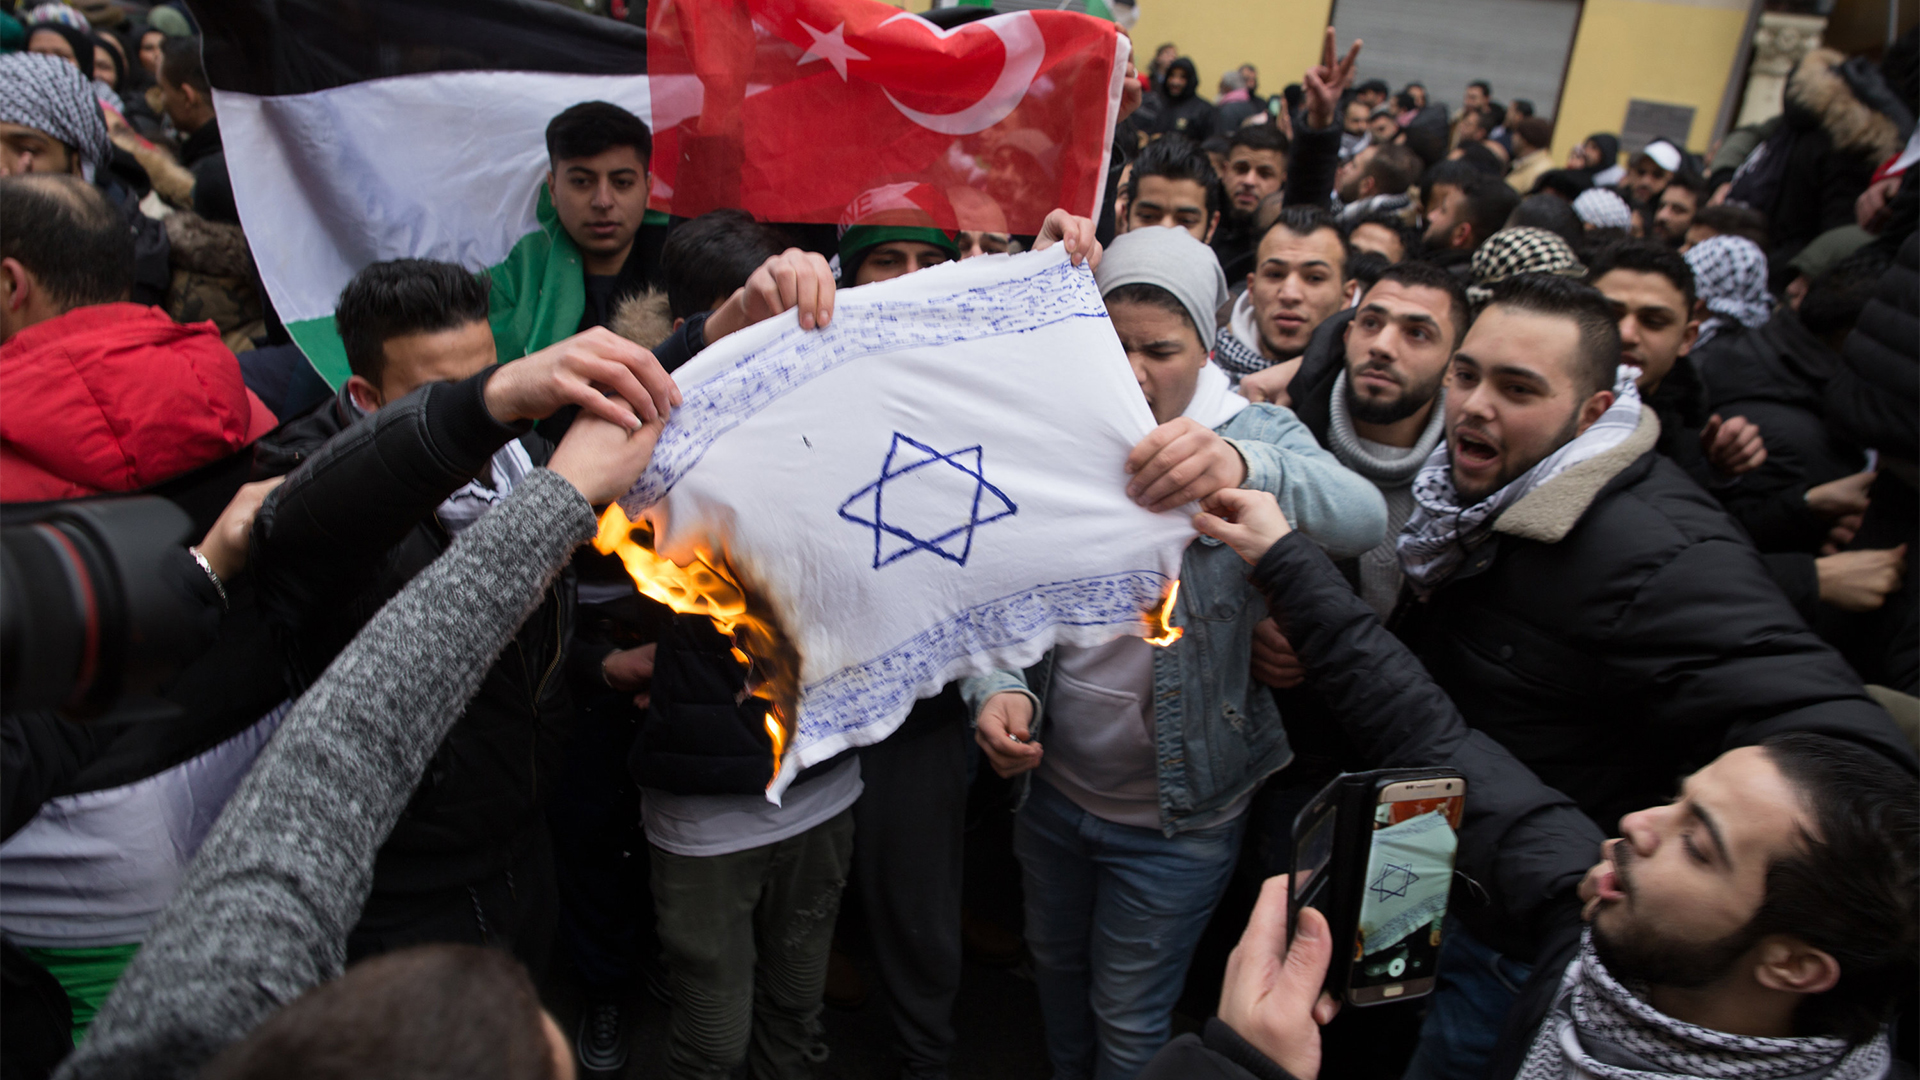 Teilnehmer einer Demonstration verbrennen am 10.12.2017 eine Fahne mit einem Davidstern in Berlin im Stadtteil Neukölln. (Quelle: Jüdisches Forum für Demokratie und gegen Antisemitismus e.V./dpa) | dpa / JFDA